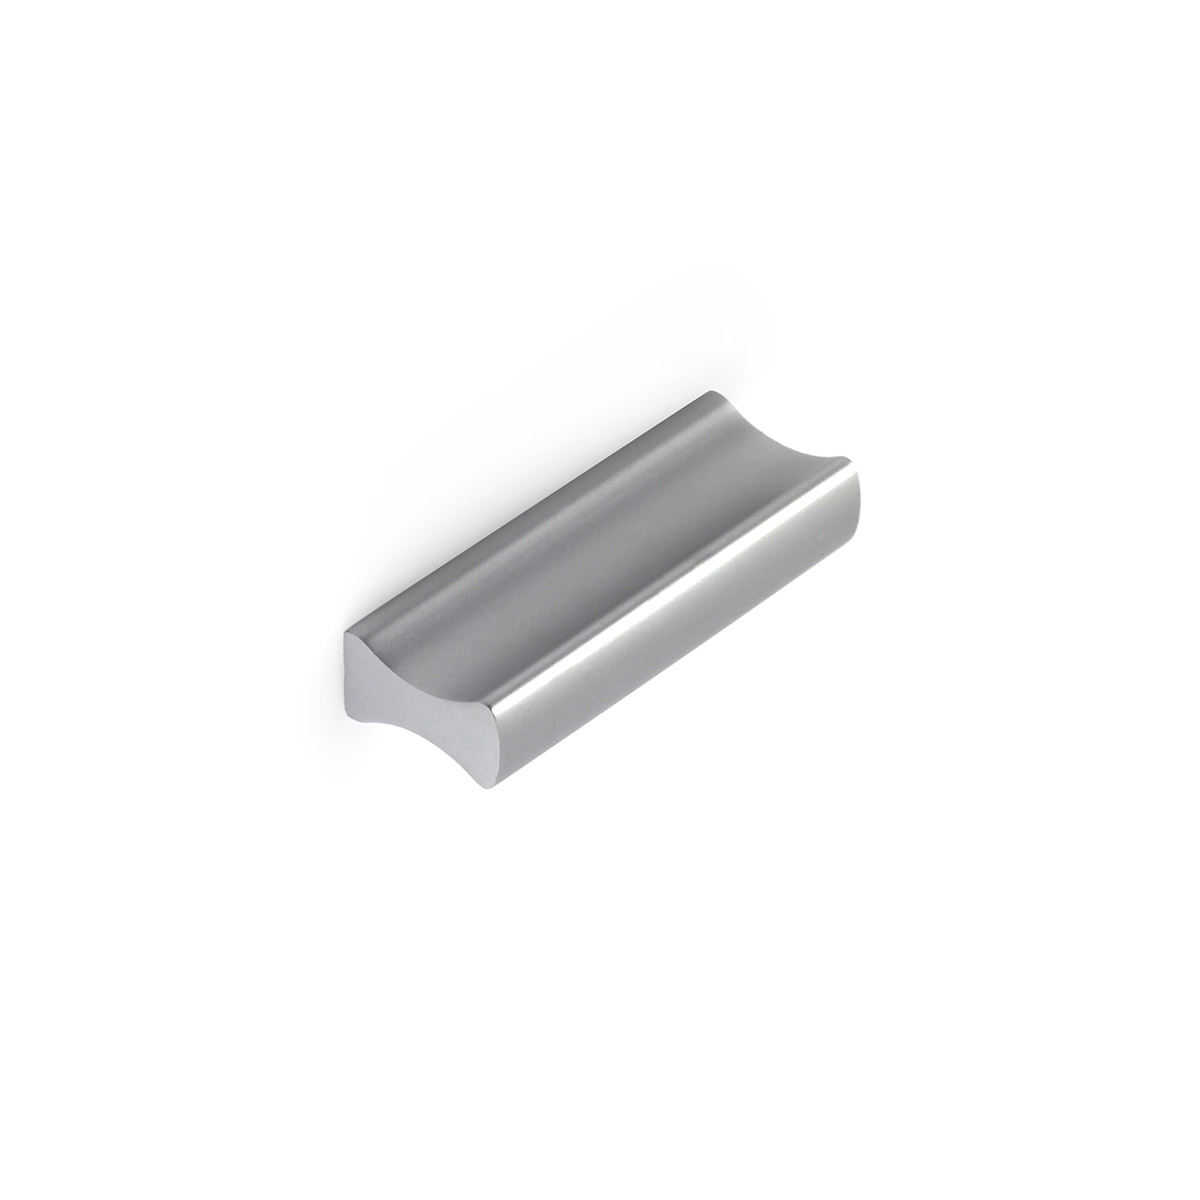 Poignée en aluminium avec finition anodisée mat, dimensions: 44x9x17mm et inserts: 32mm